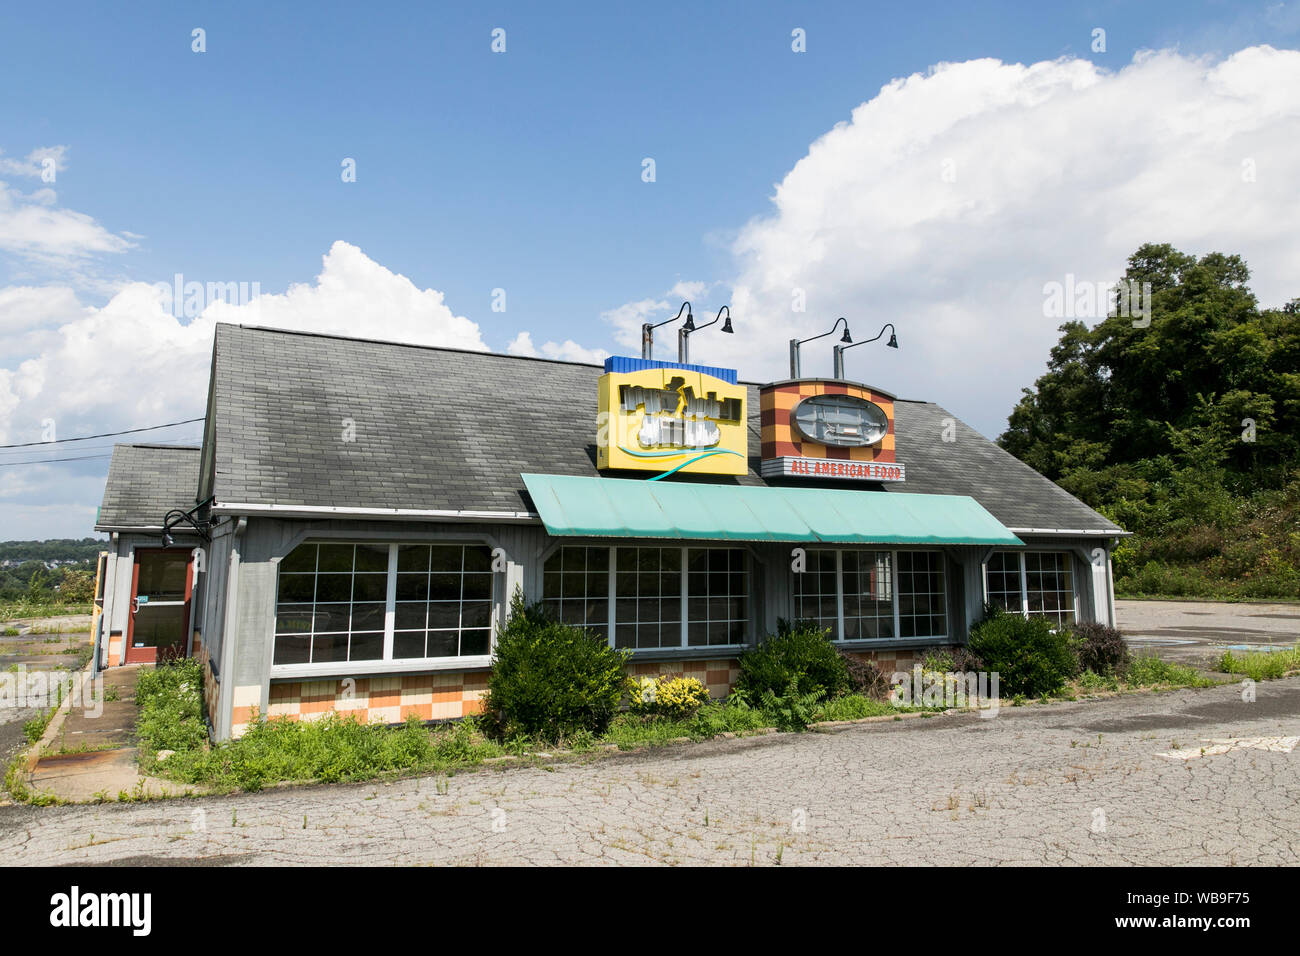 Affichage à l'extérieur d'un logo abandonné et fermé Long John Silver's et A&W restaurant fast food situé à Pittsburgh, Pennsylvanie le 8 août 2019. Banque D'Images